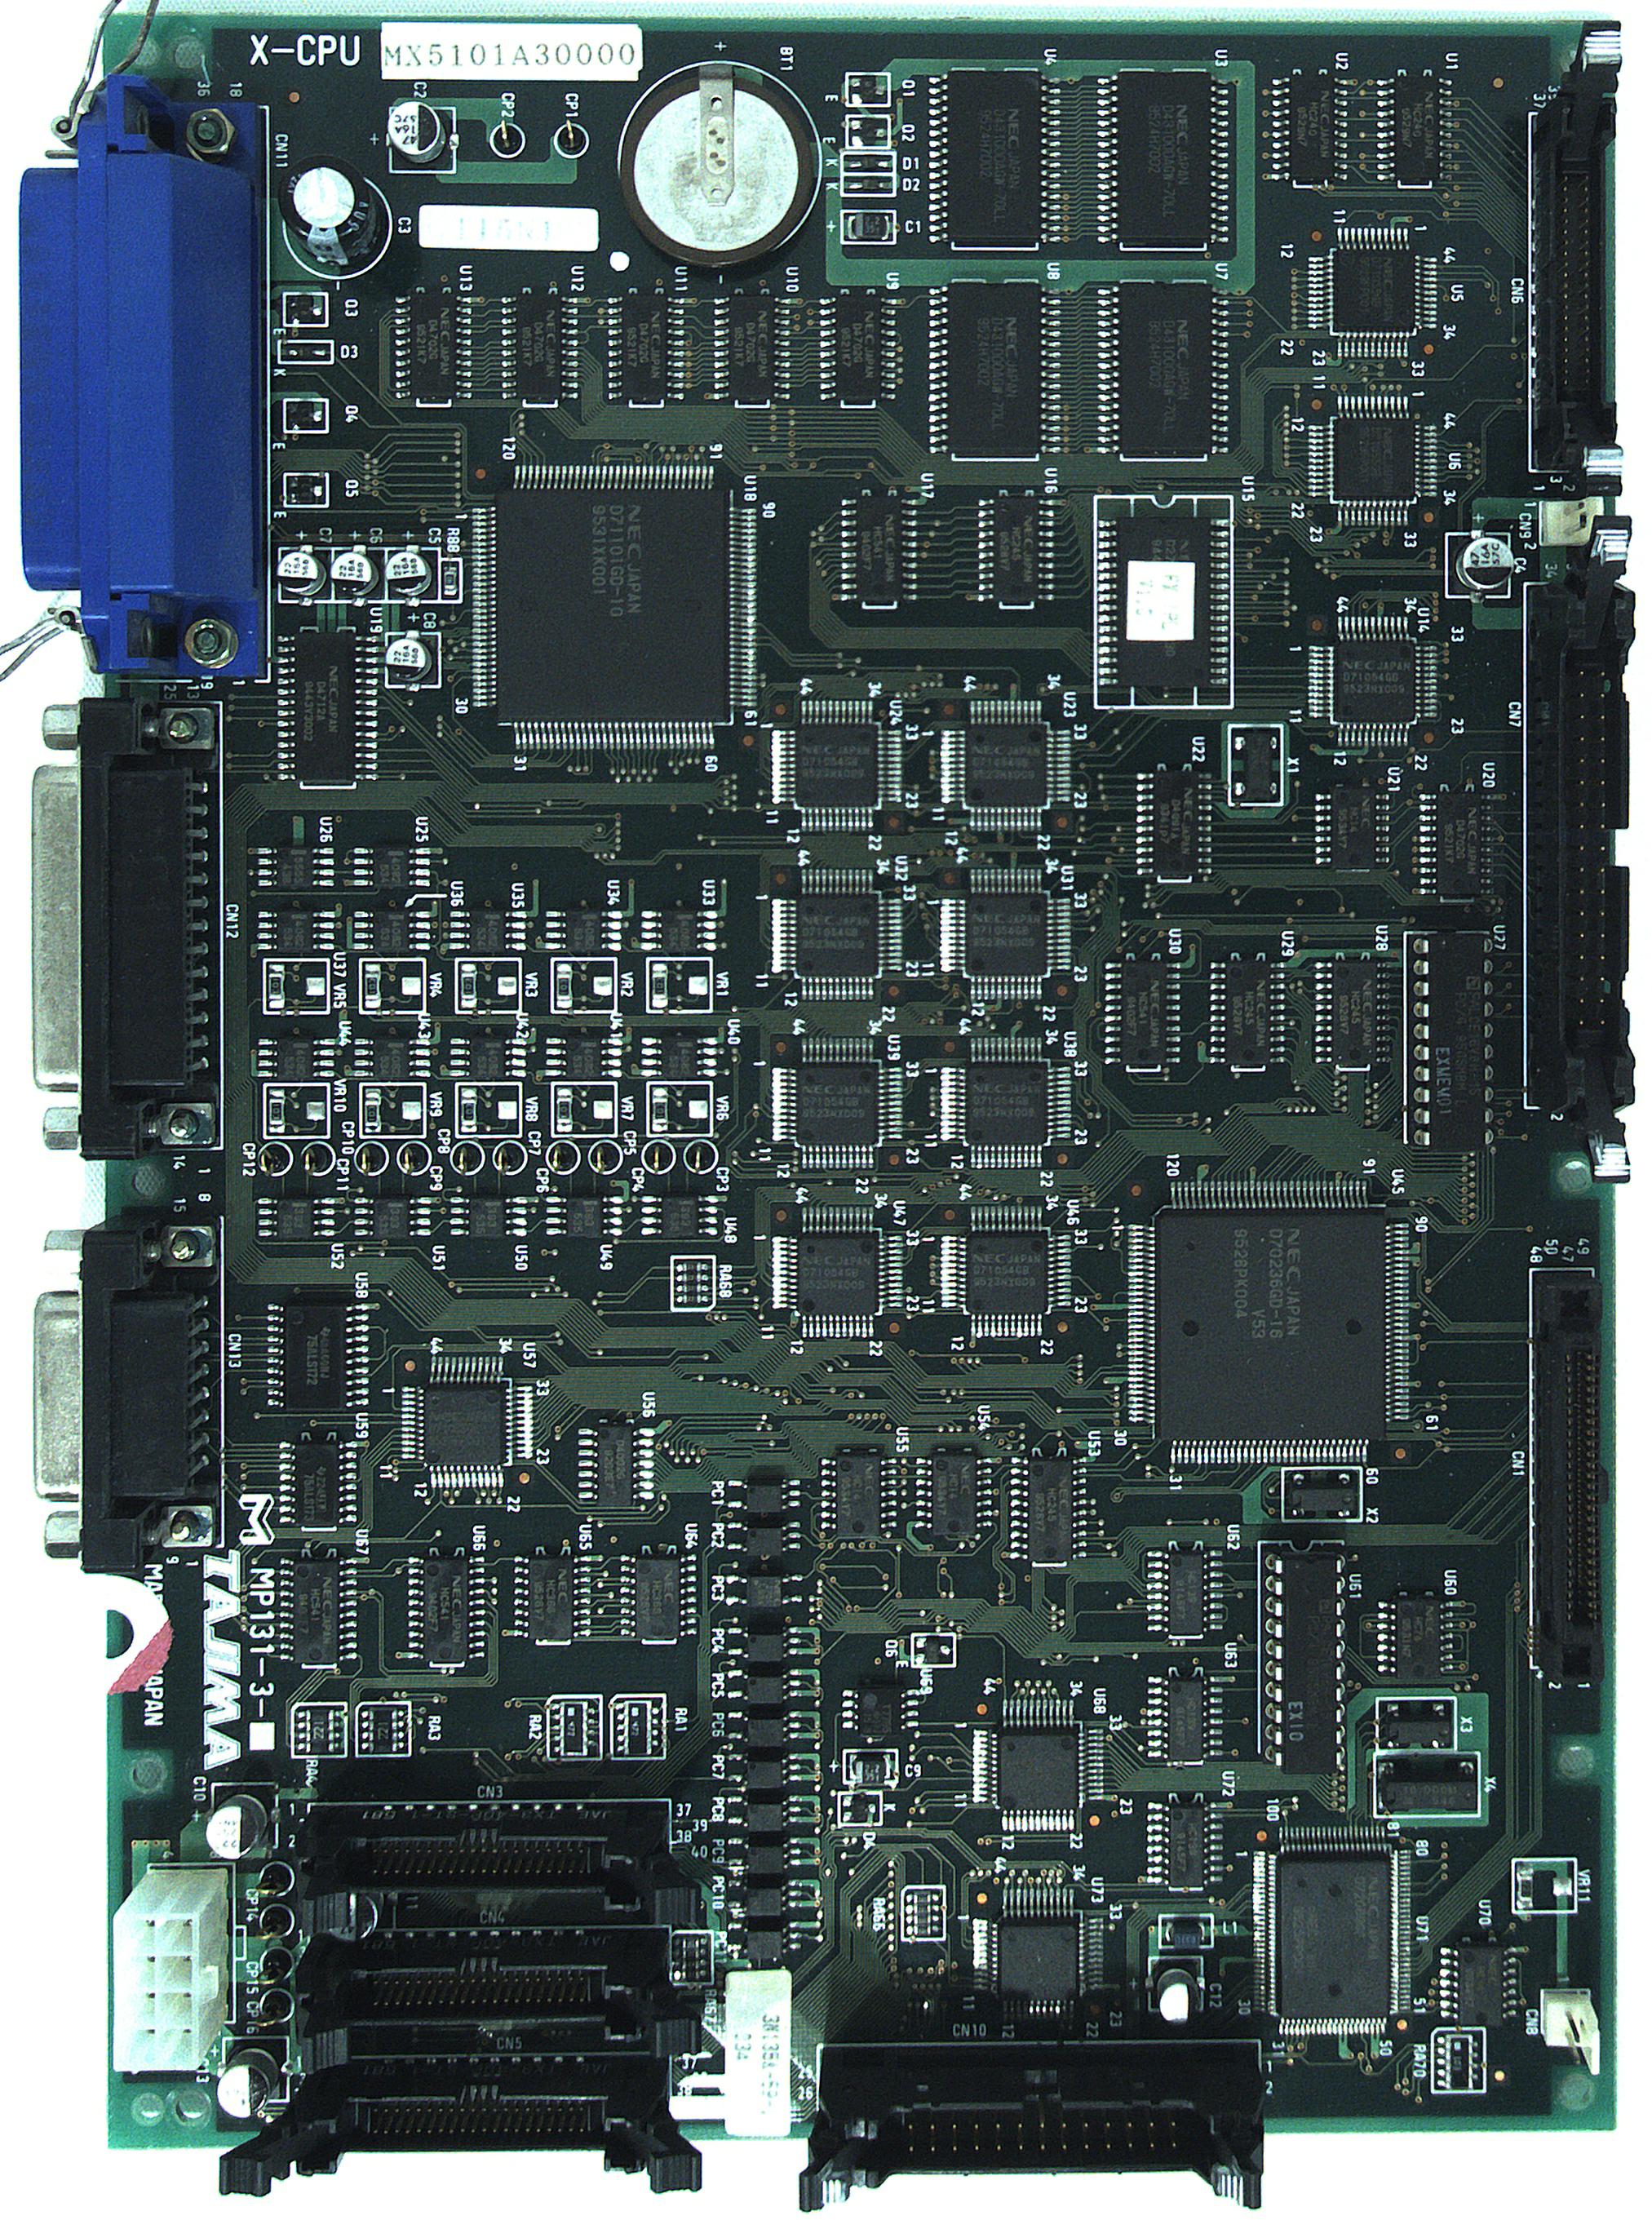 Carta CPU MX5101A30000